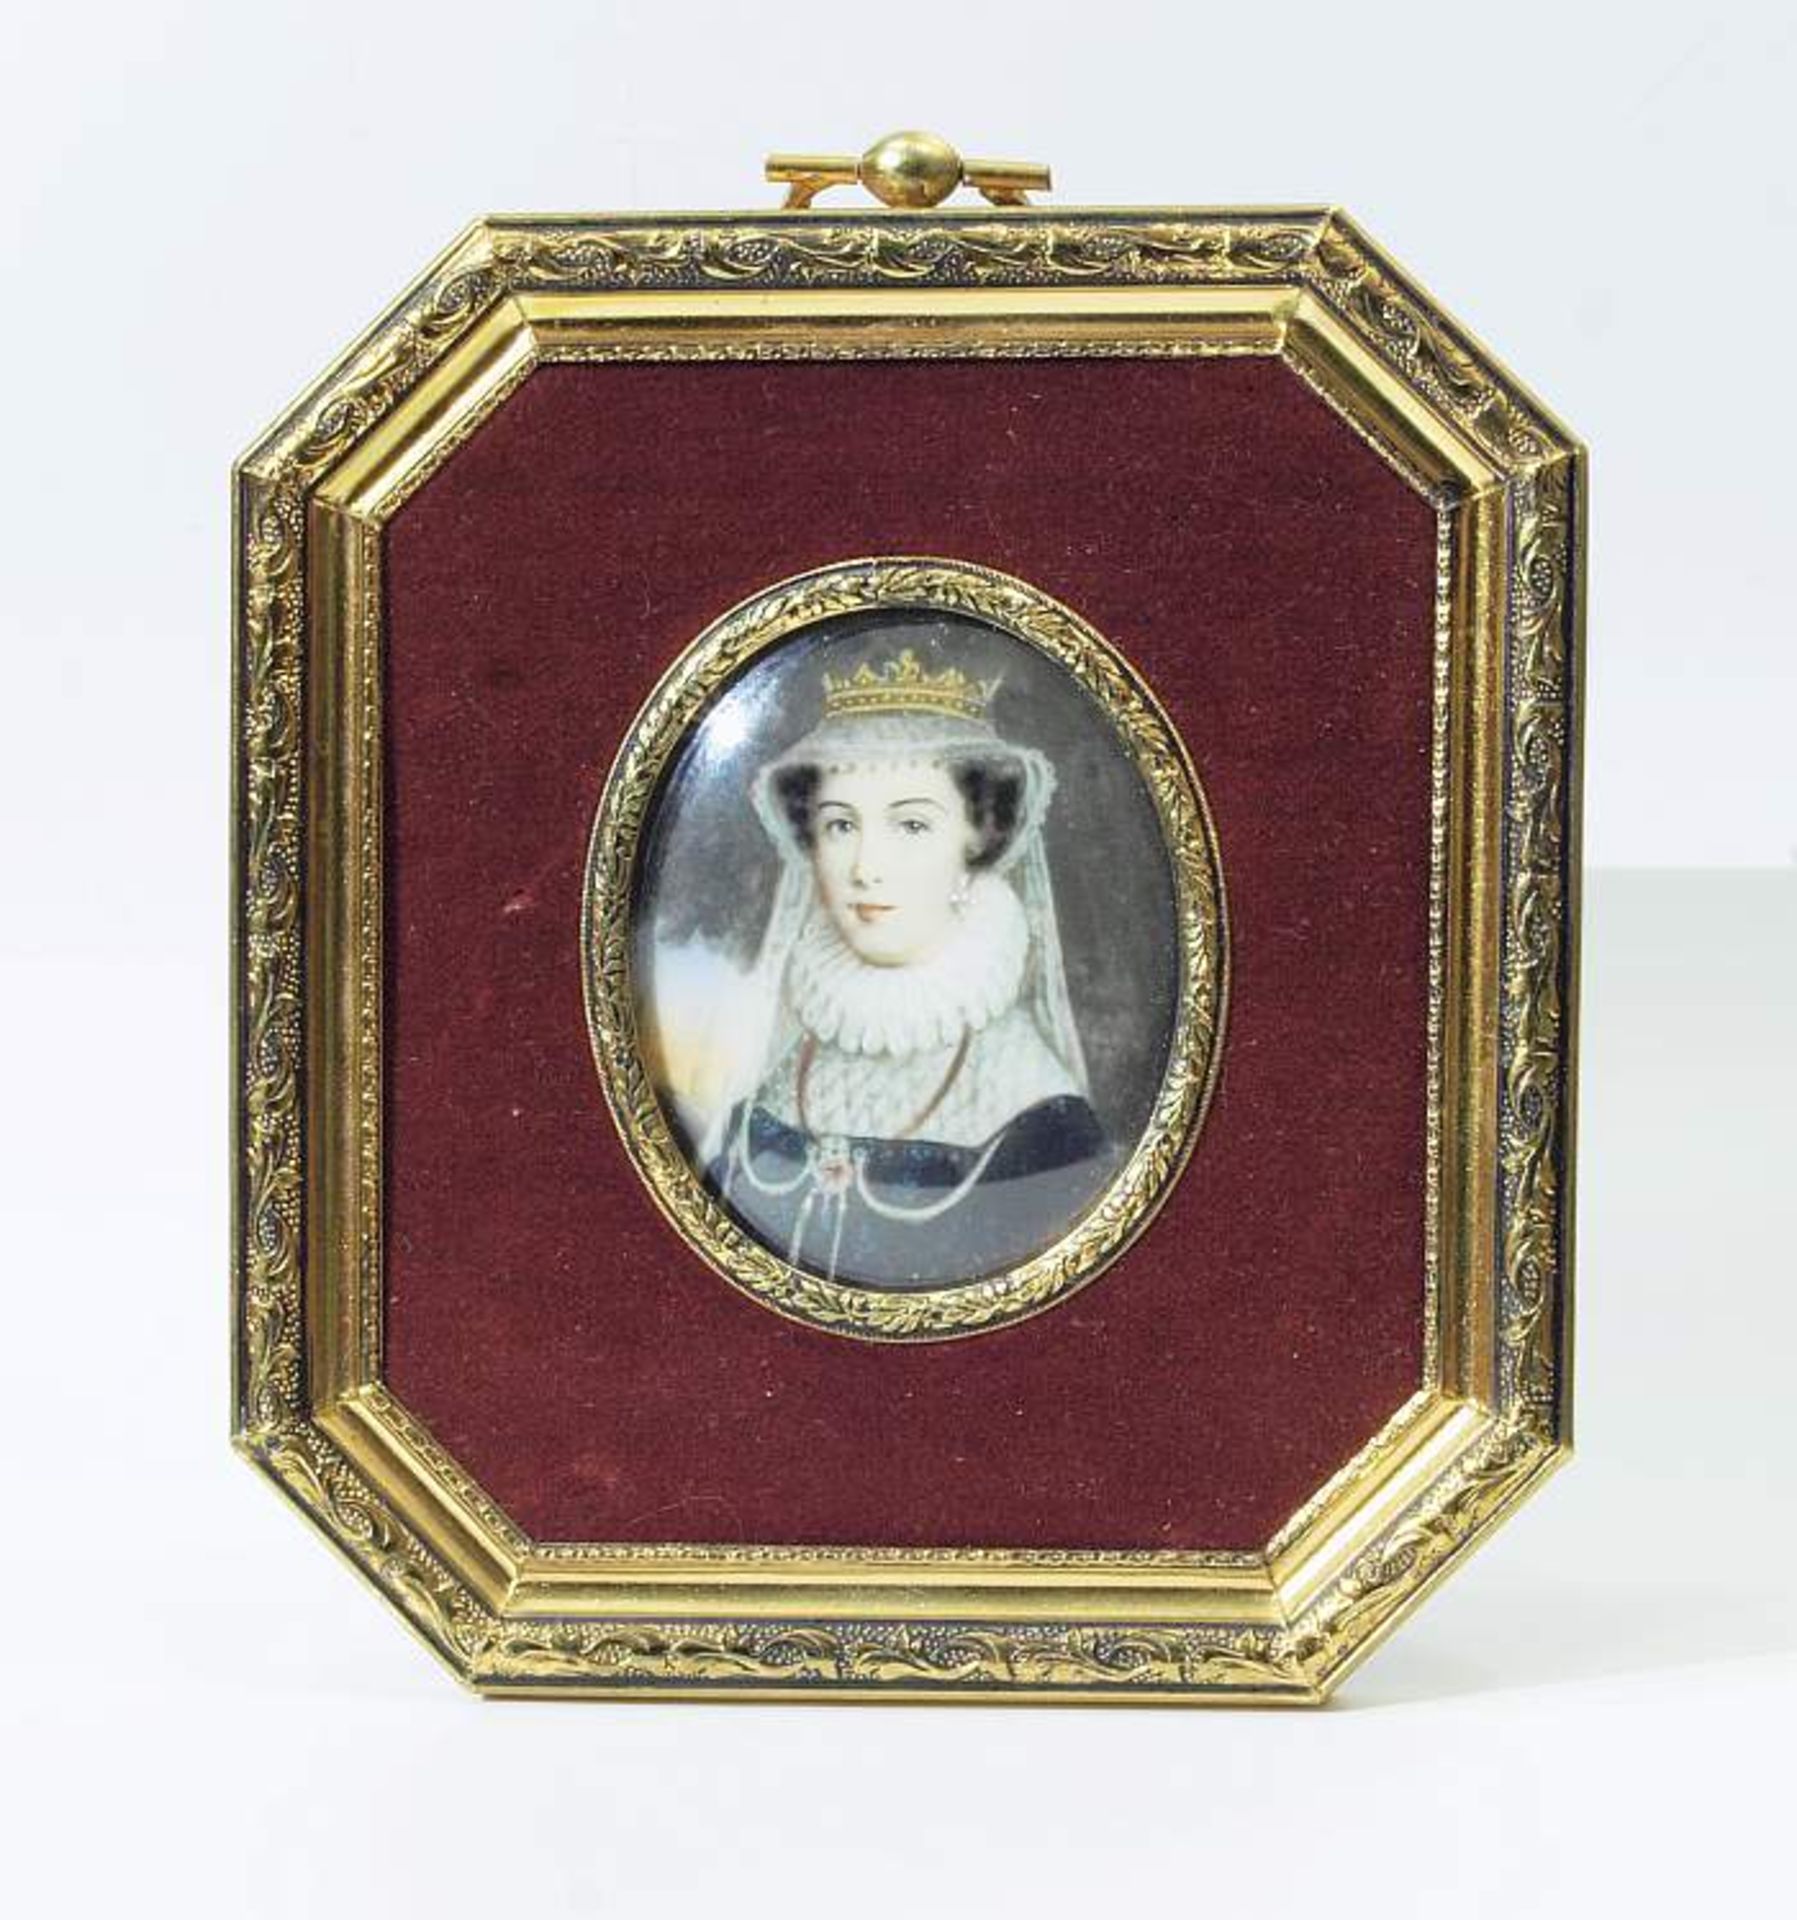 Elfenbein-Miniatur. "Queen Mary Stuart". Elfenbein-Miniatur. "Queen Mary Stuart", Königin Maria I.